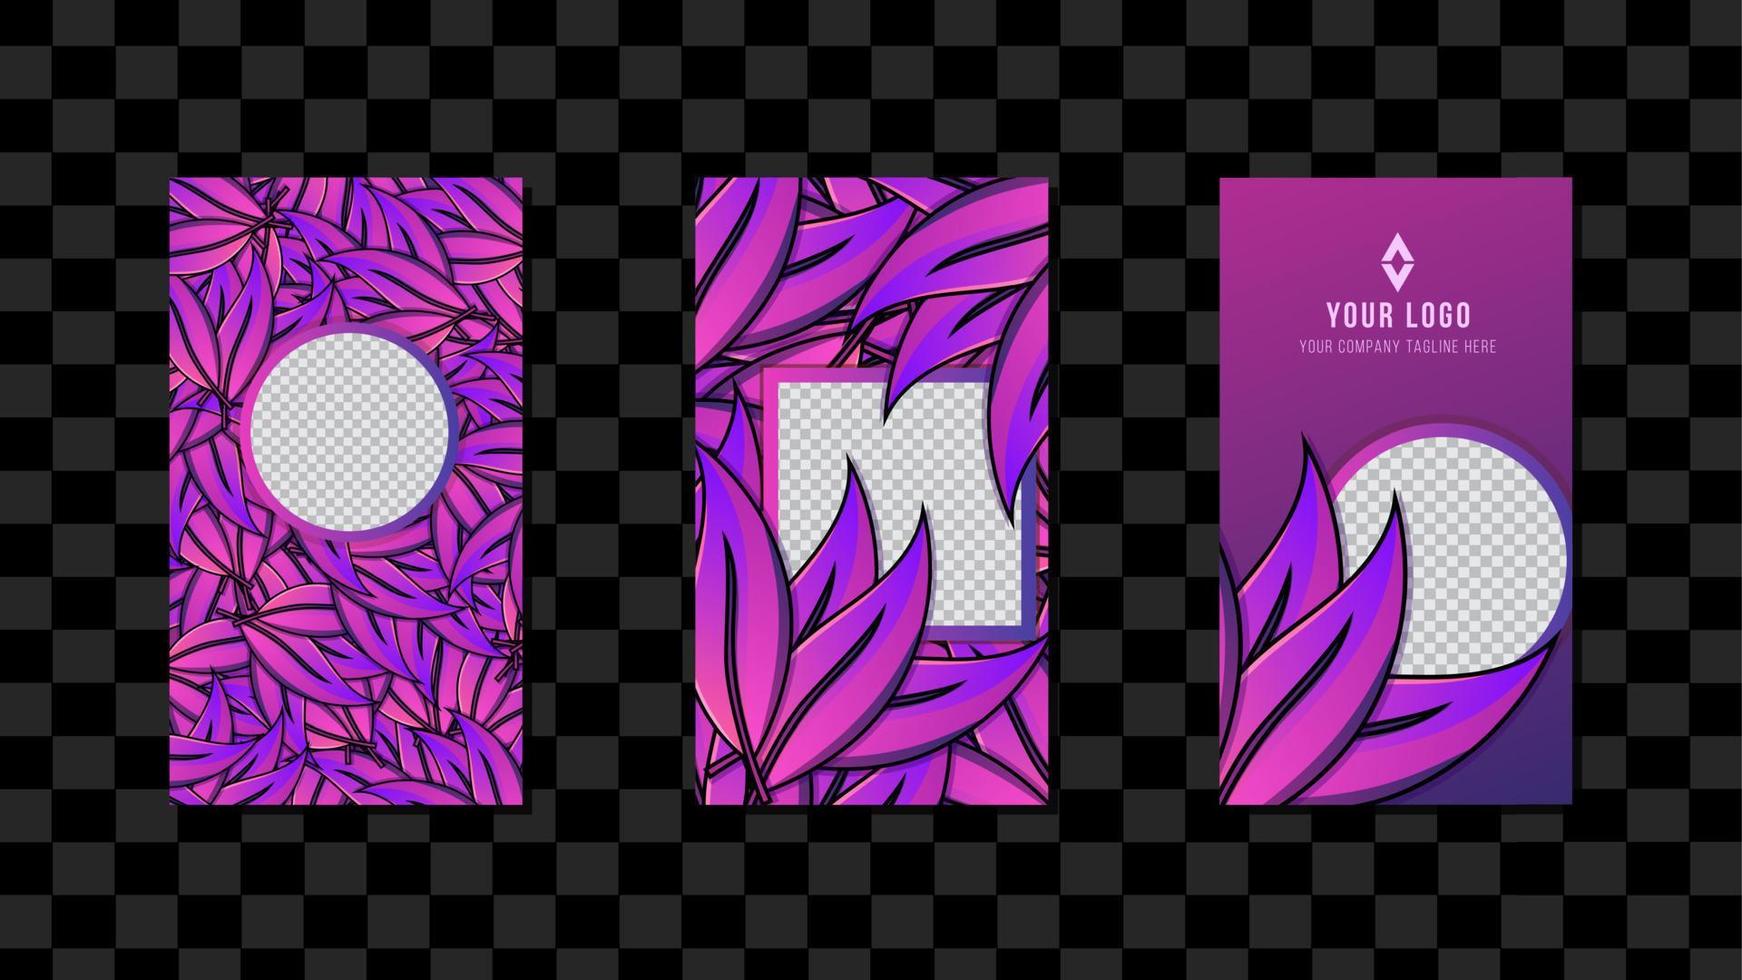 bannière de vecteur avec des feuilles de dégradé violet tropical de couleur. conception botanique pour modèle de médias sociaux, histoires, soirée tropicale, invitation de mariage, cosmétiques, spa